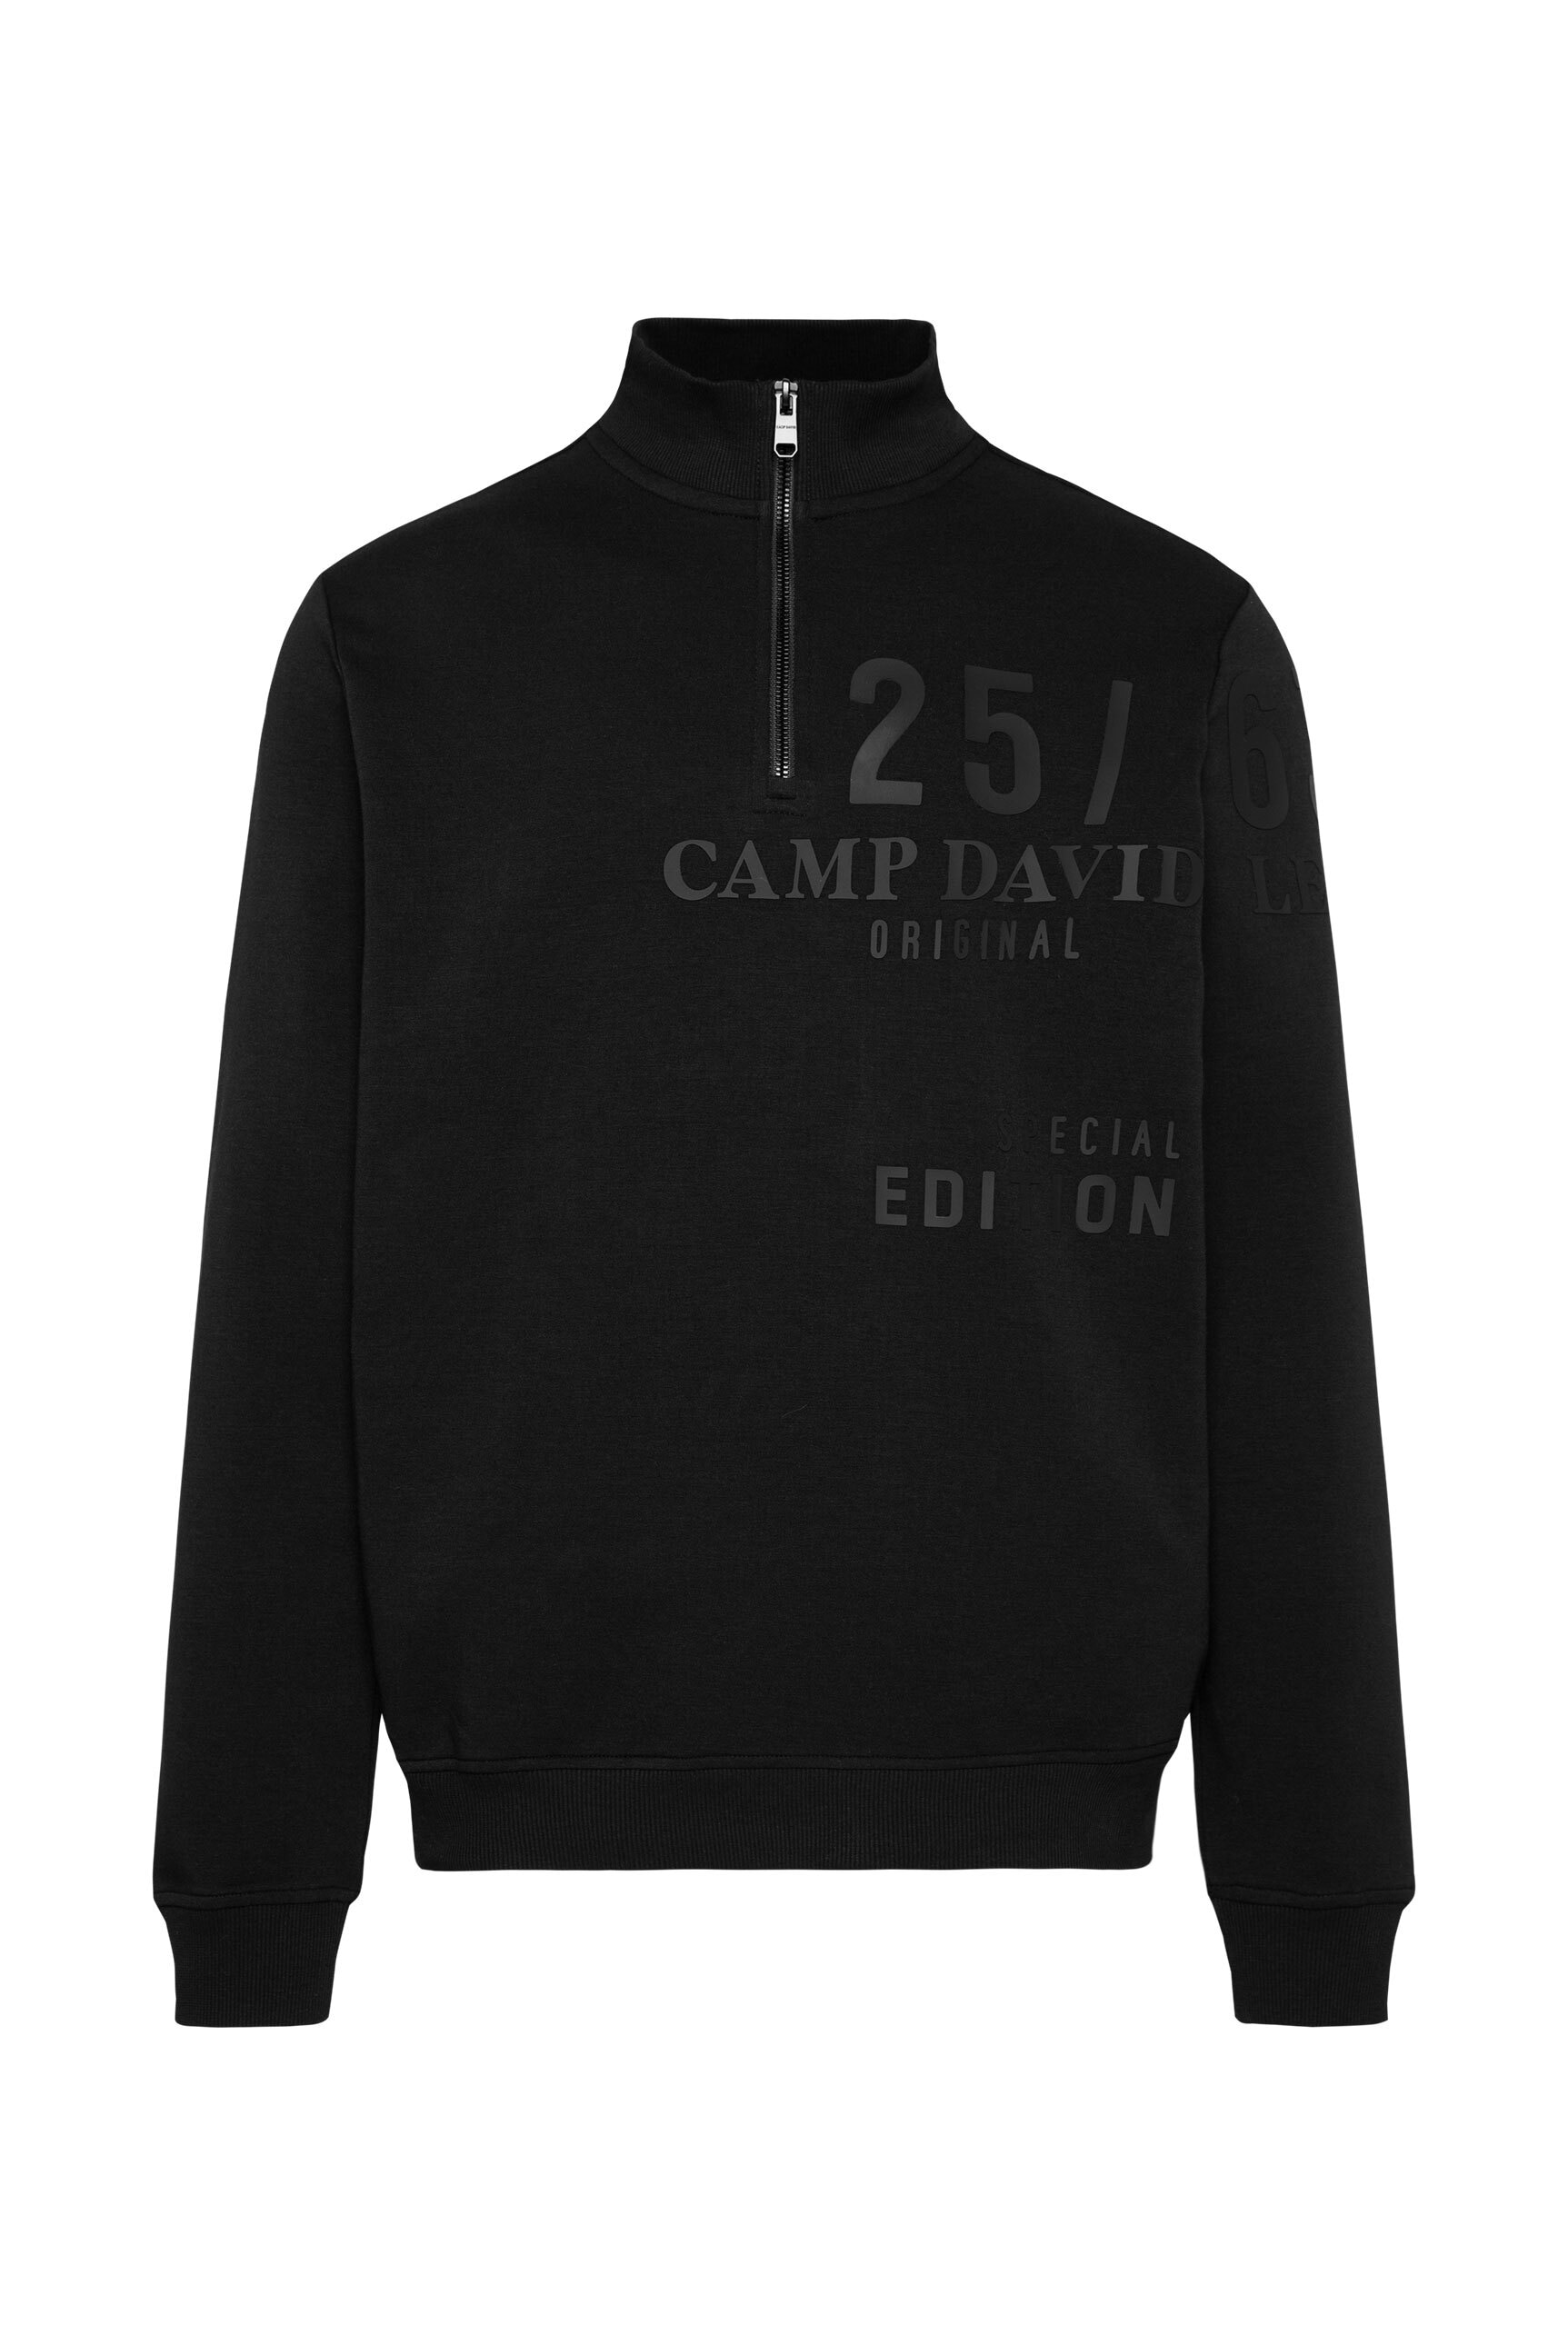 CAMP DAVID Sweater, mit Zipper am Stehkragen